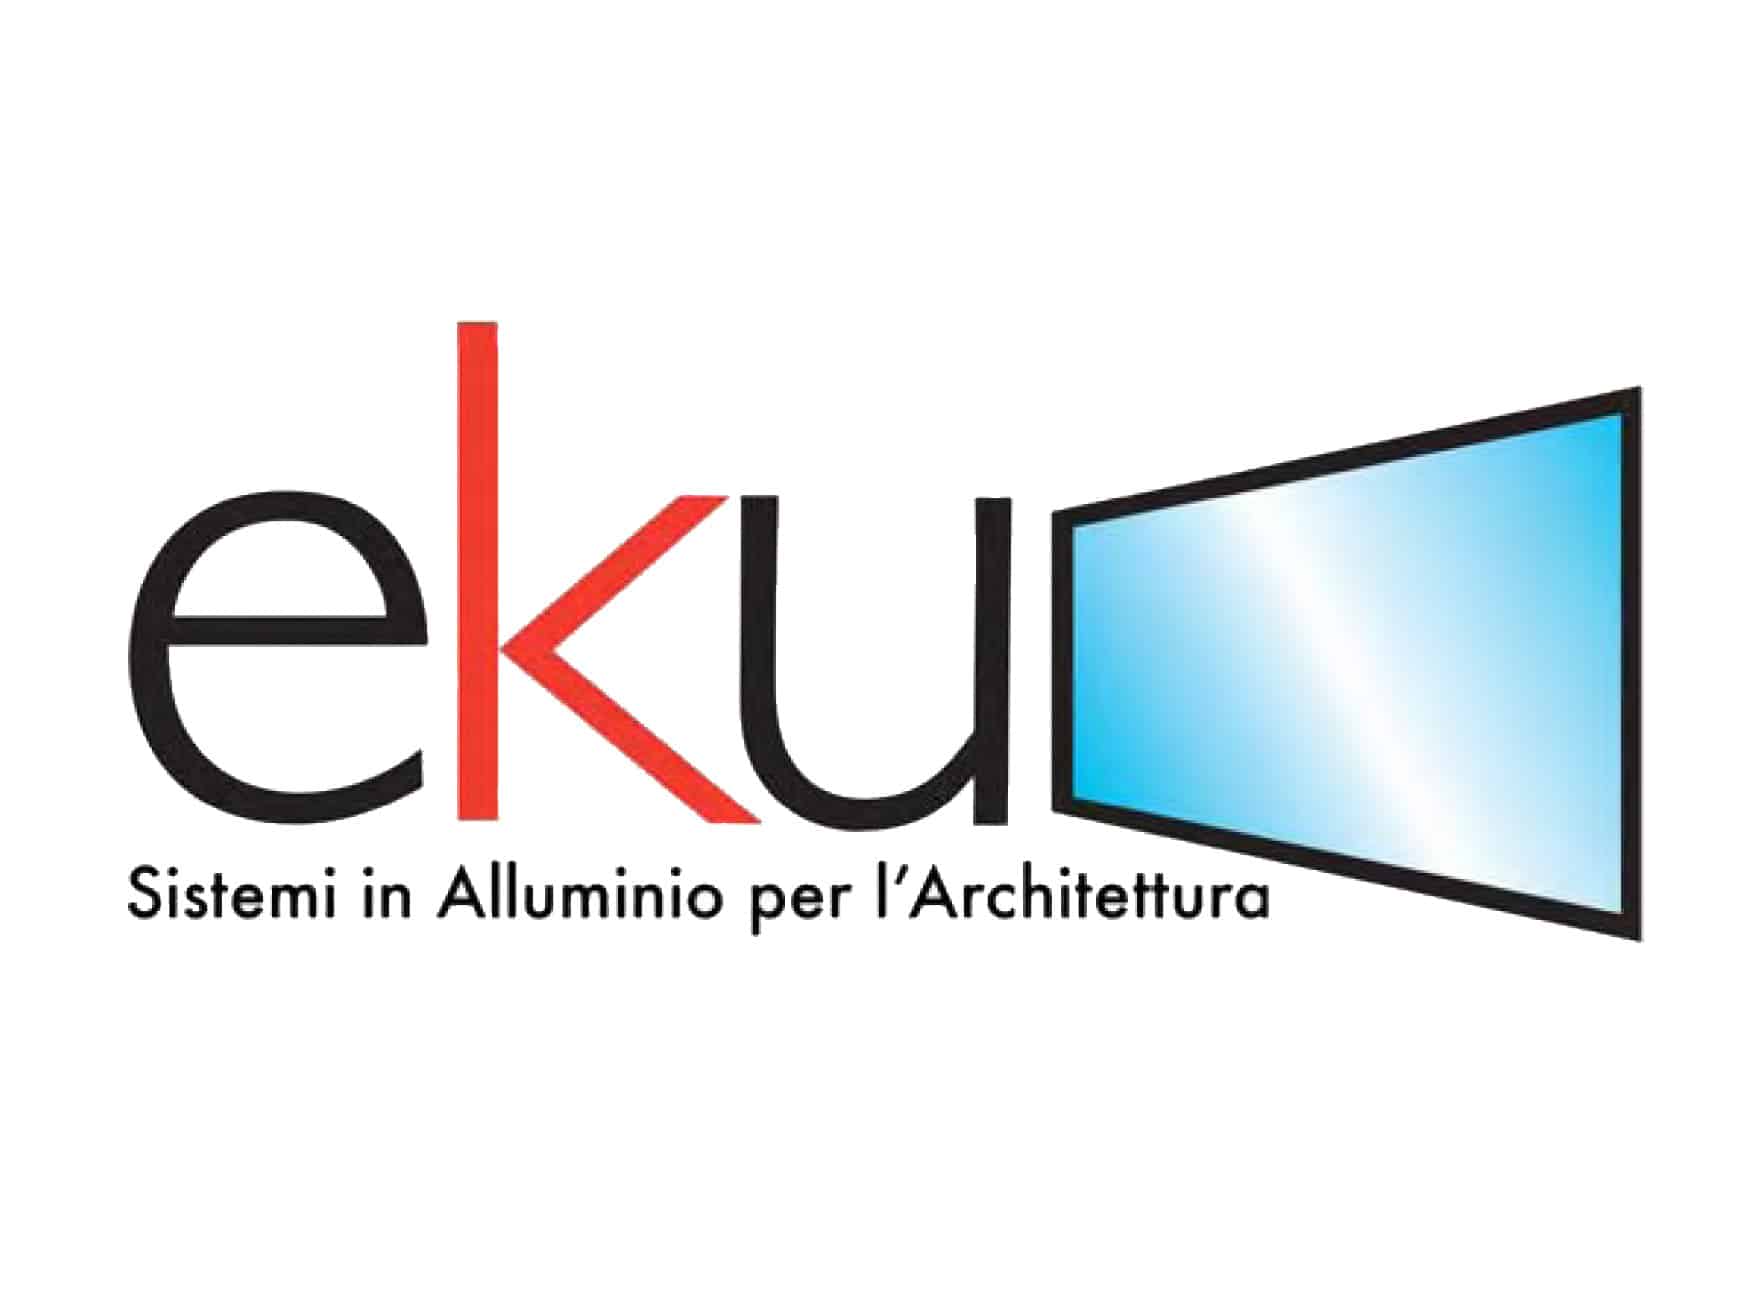 Partnership with EKU Sistemi – January 2020